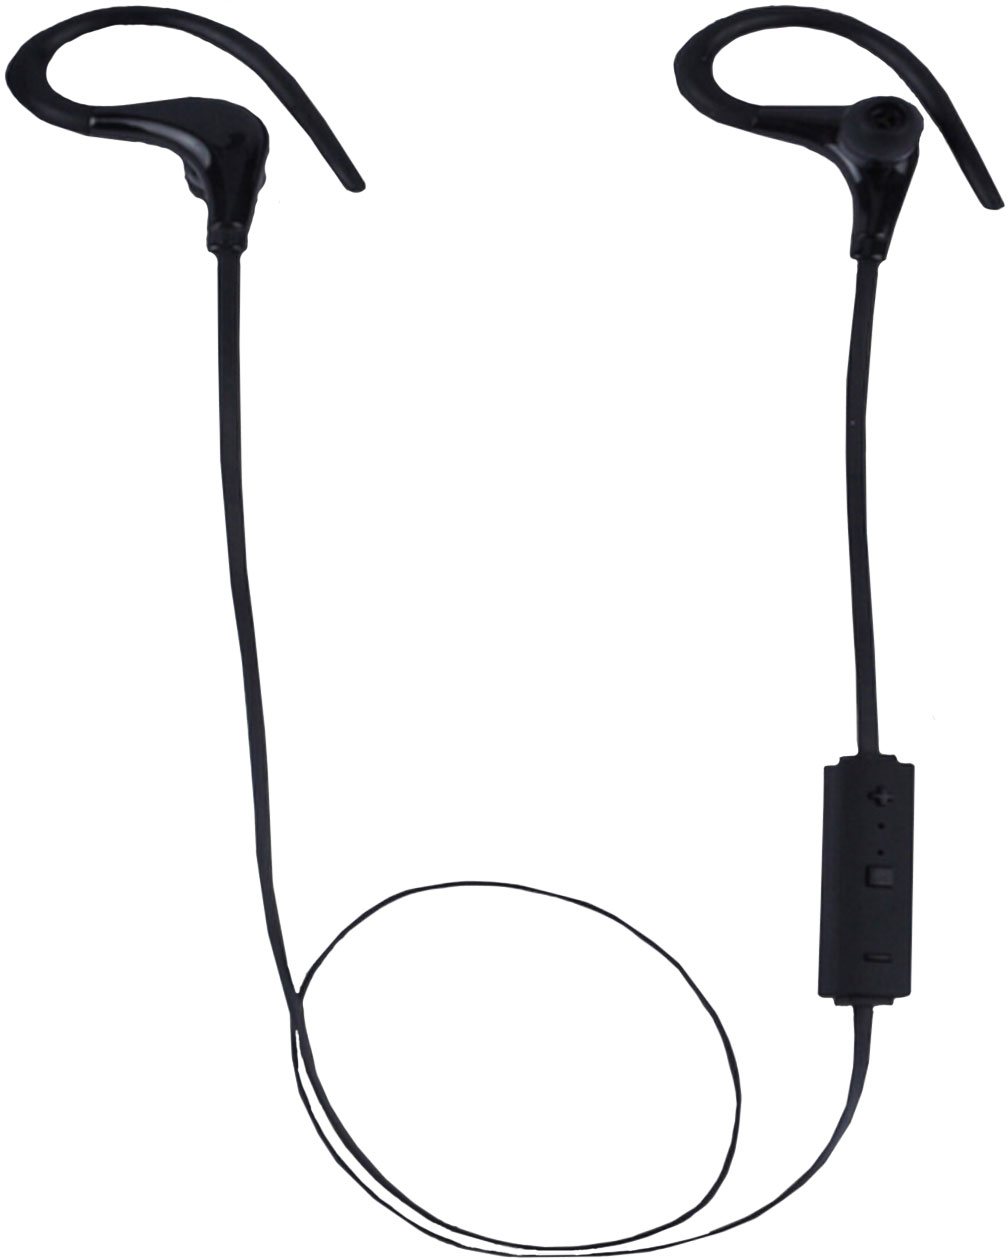 Drahtlose Kopfhörer -  Sportliche drahtlose Kopfhörer